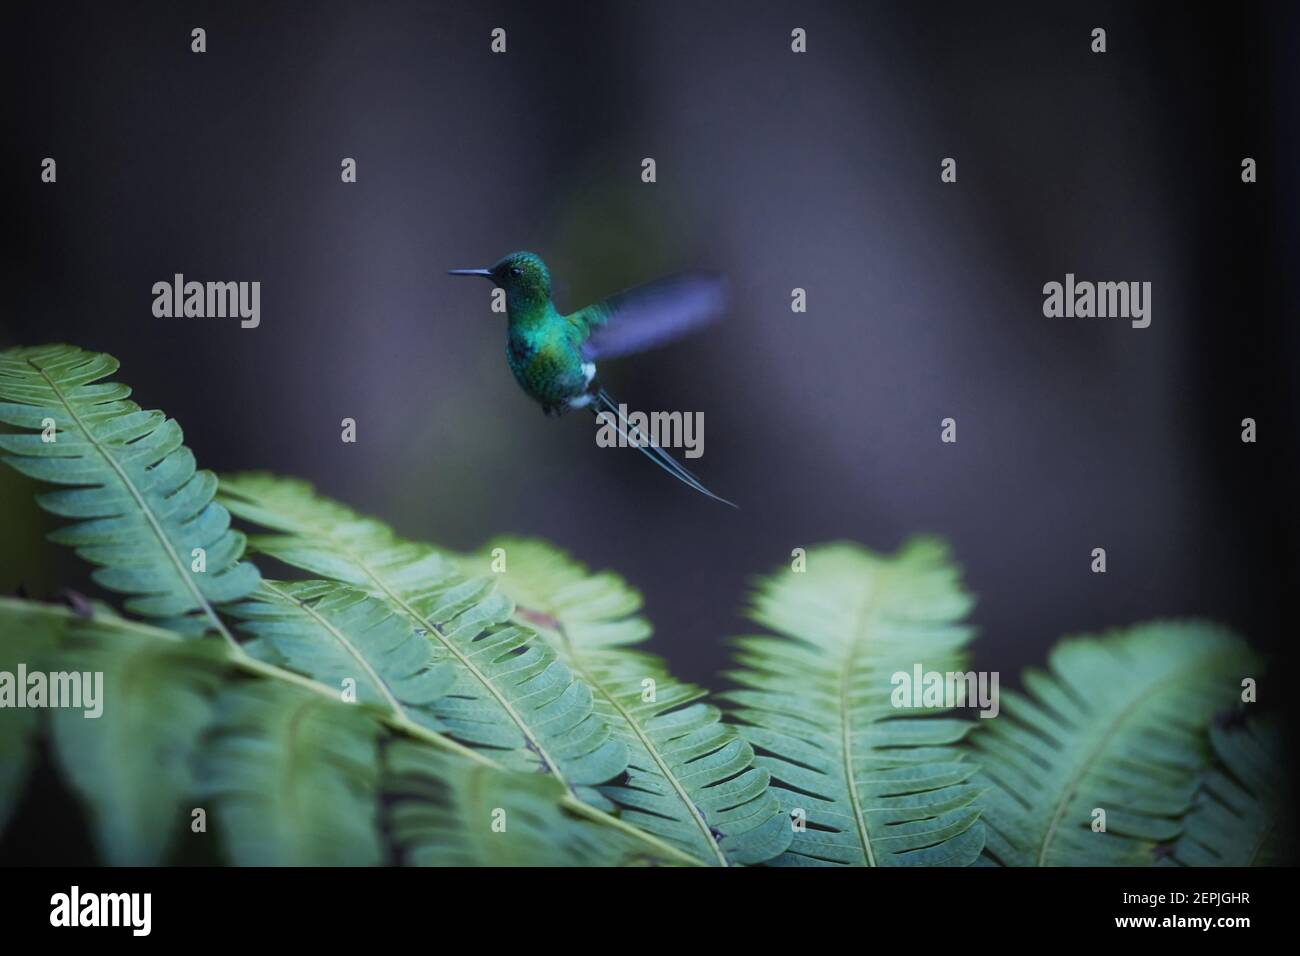 Auf dunkelgrünem Hintergrund, kleiner Kolibri mit langem Schwanz, Discosura conversii, grüner Dornschwanz, schwebend in der Luft über brackigen Blättern. Stockfoto